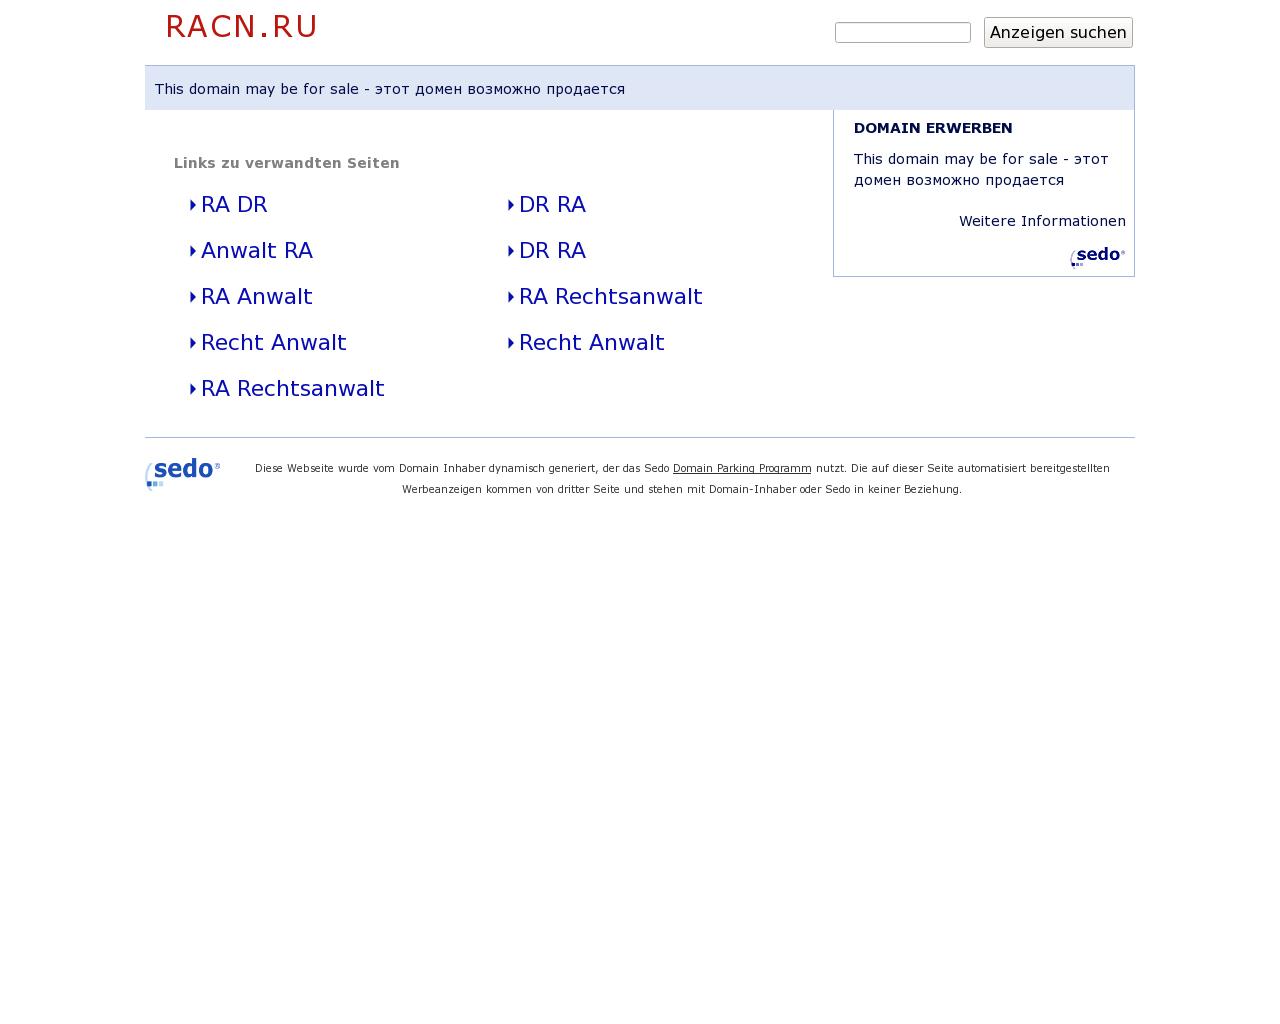 Изображение сайта racn.ru в разрешении 1280x1024